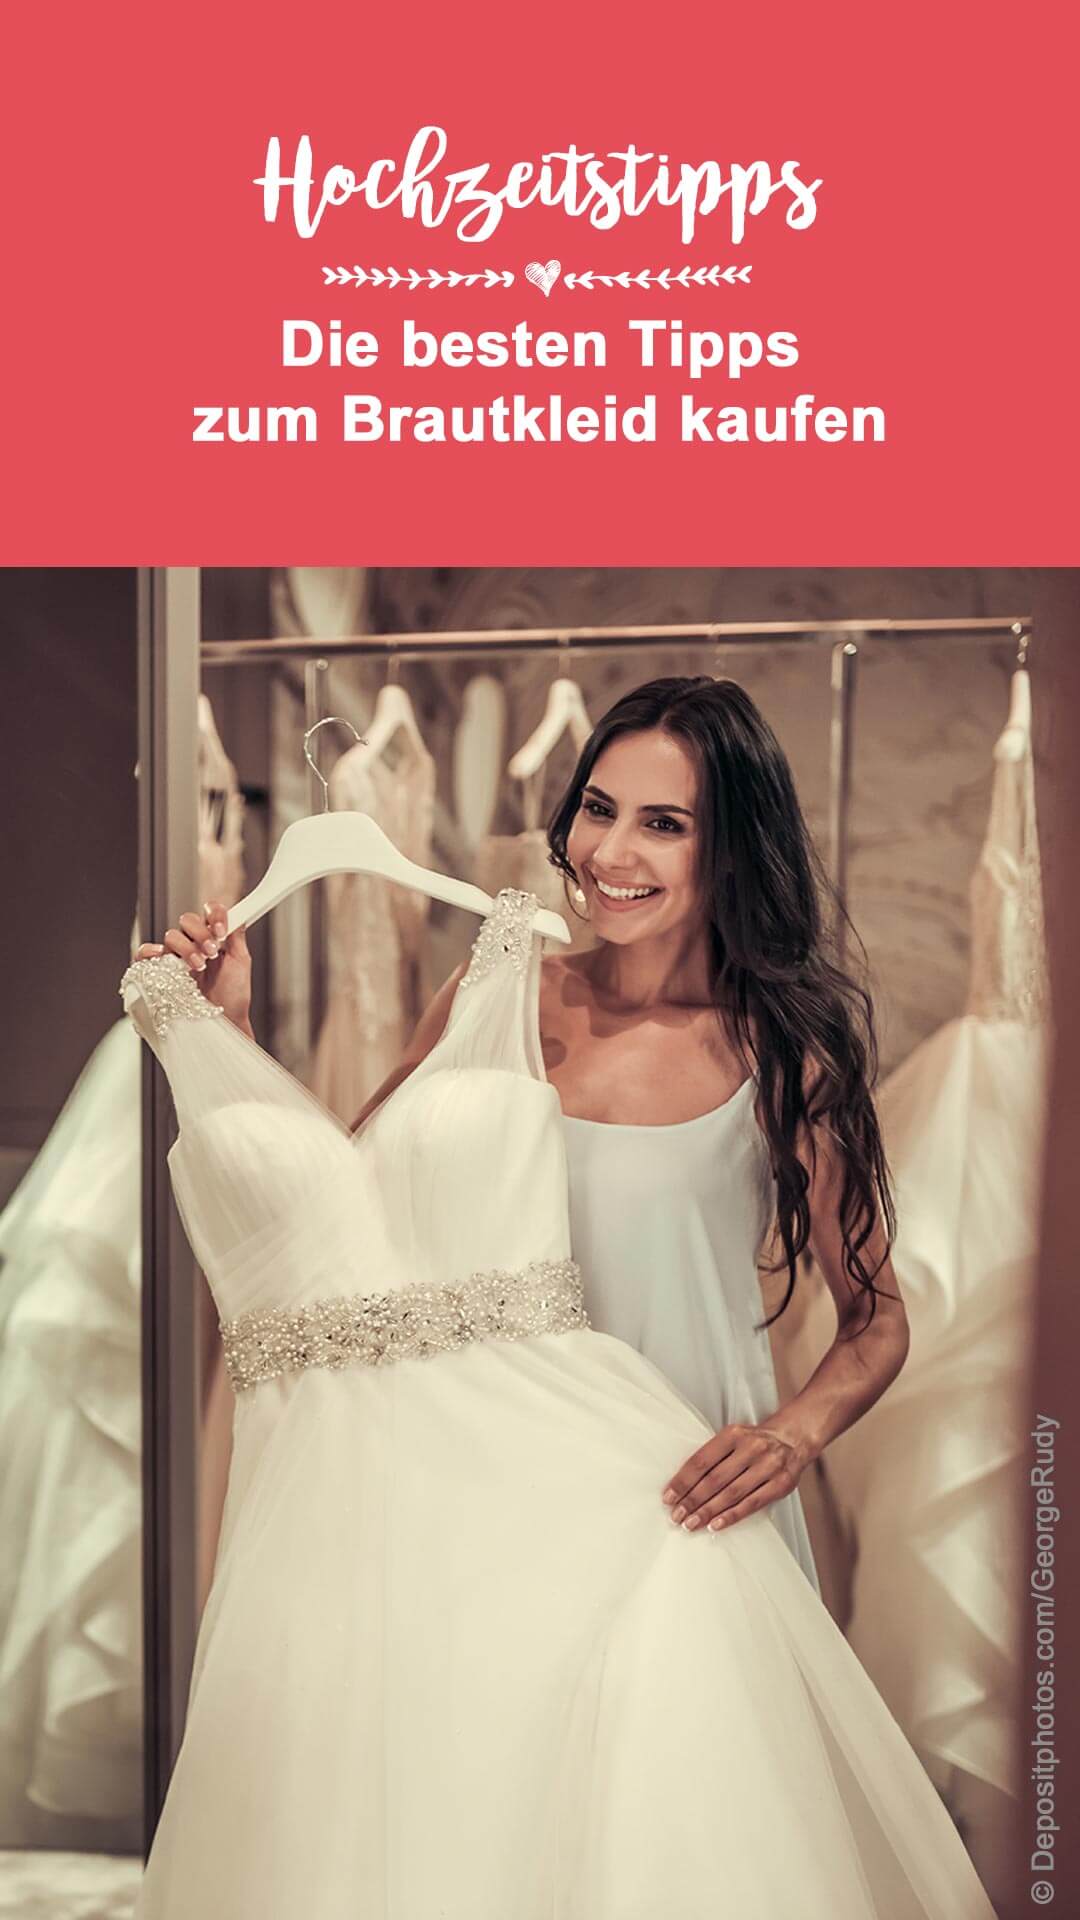 Brautkleider kaufen